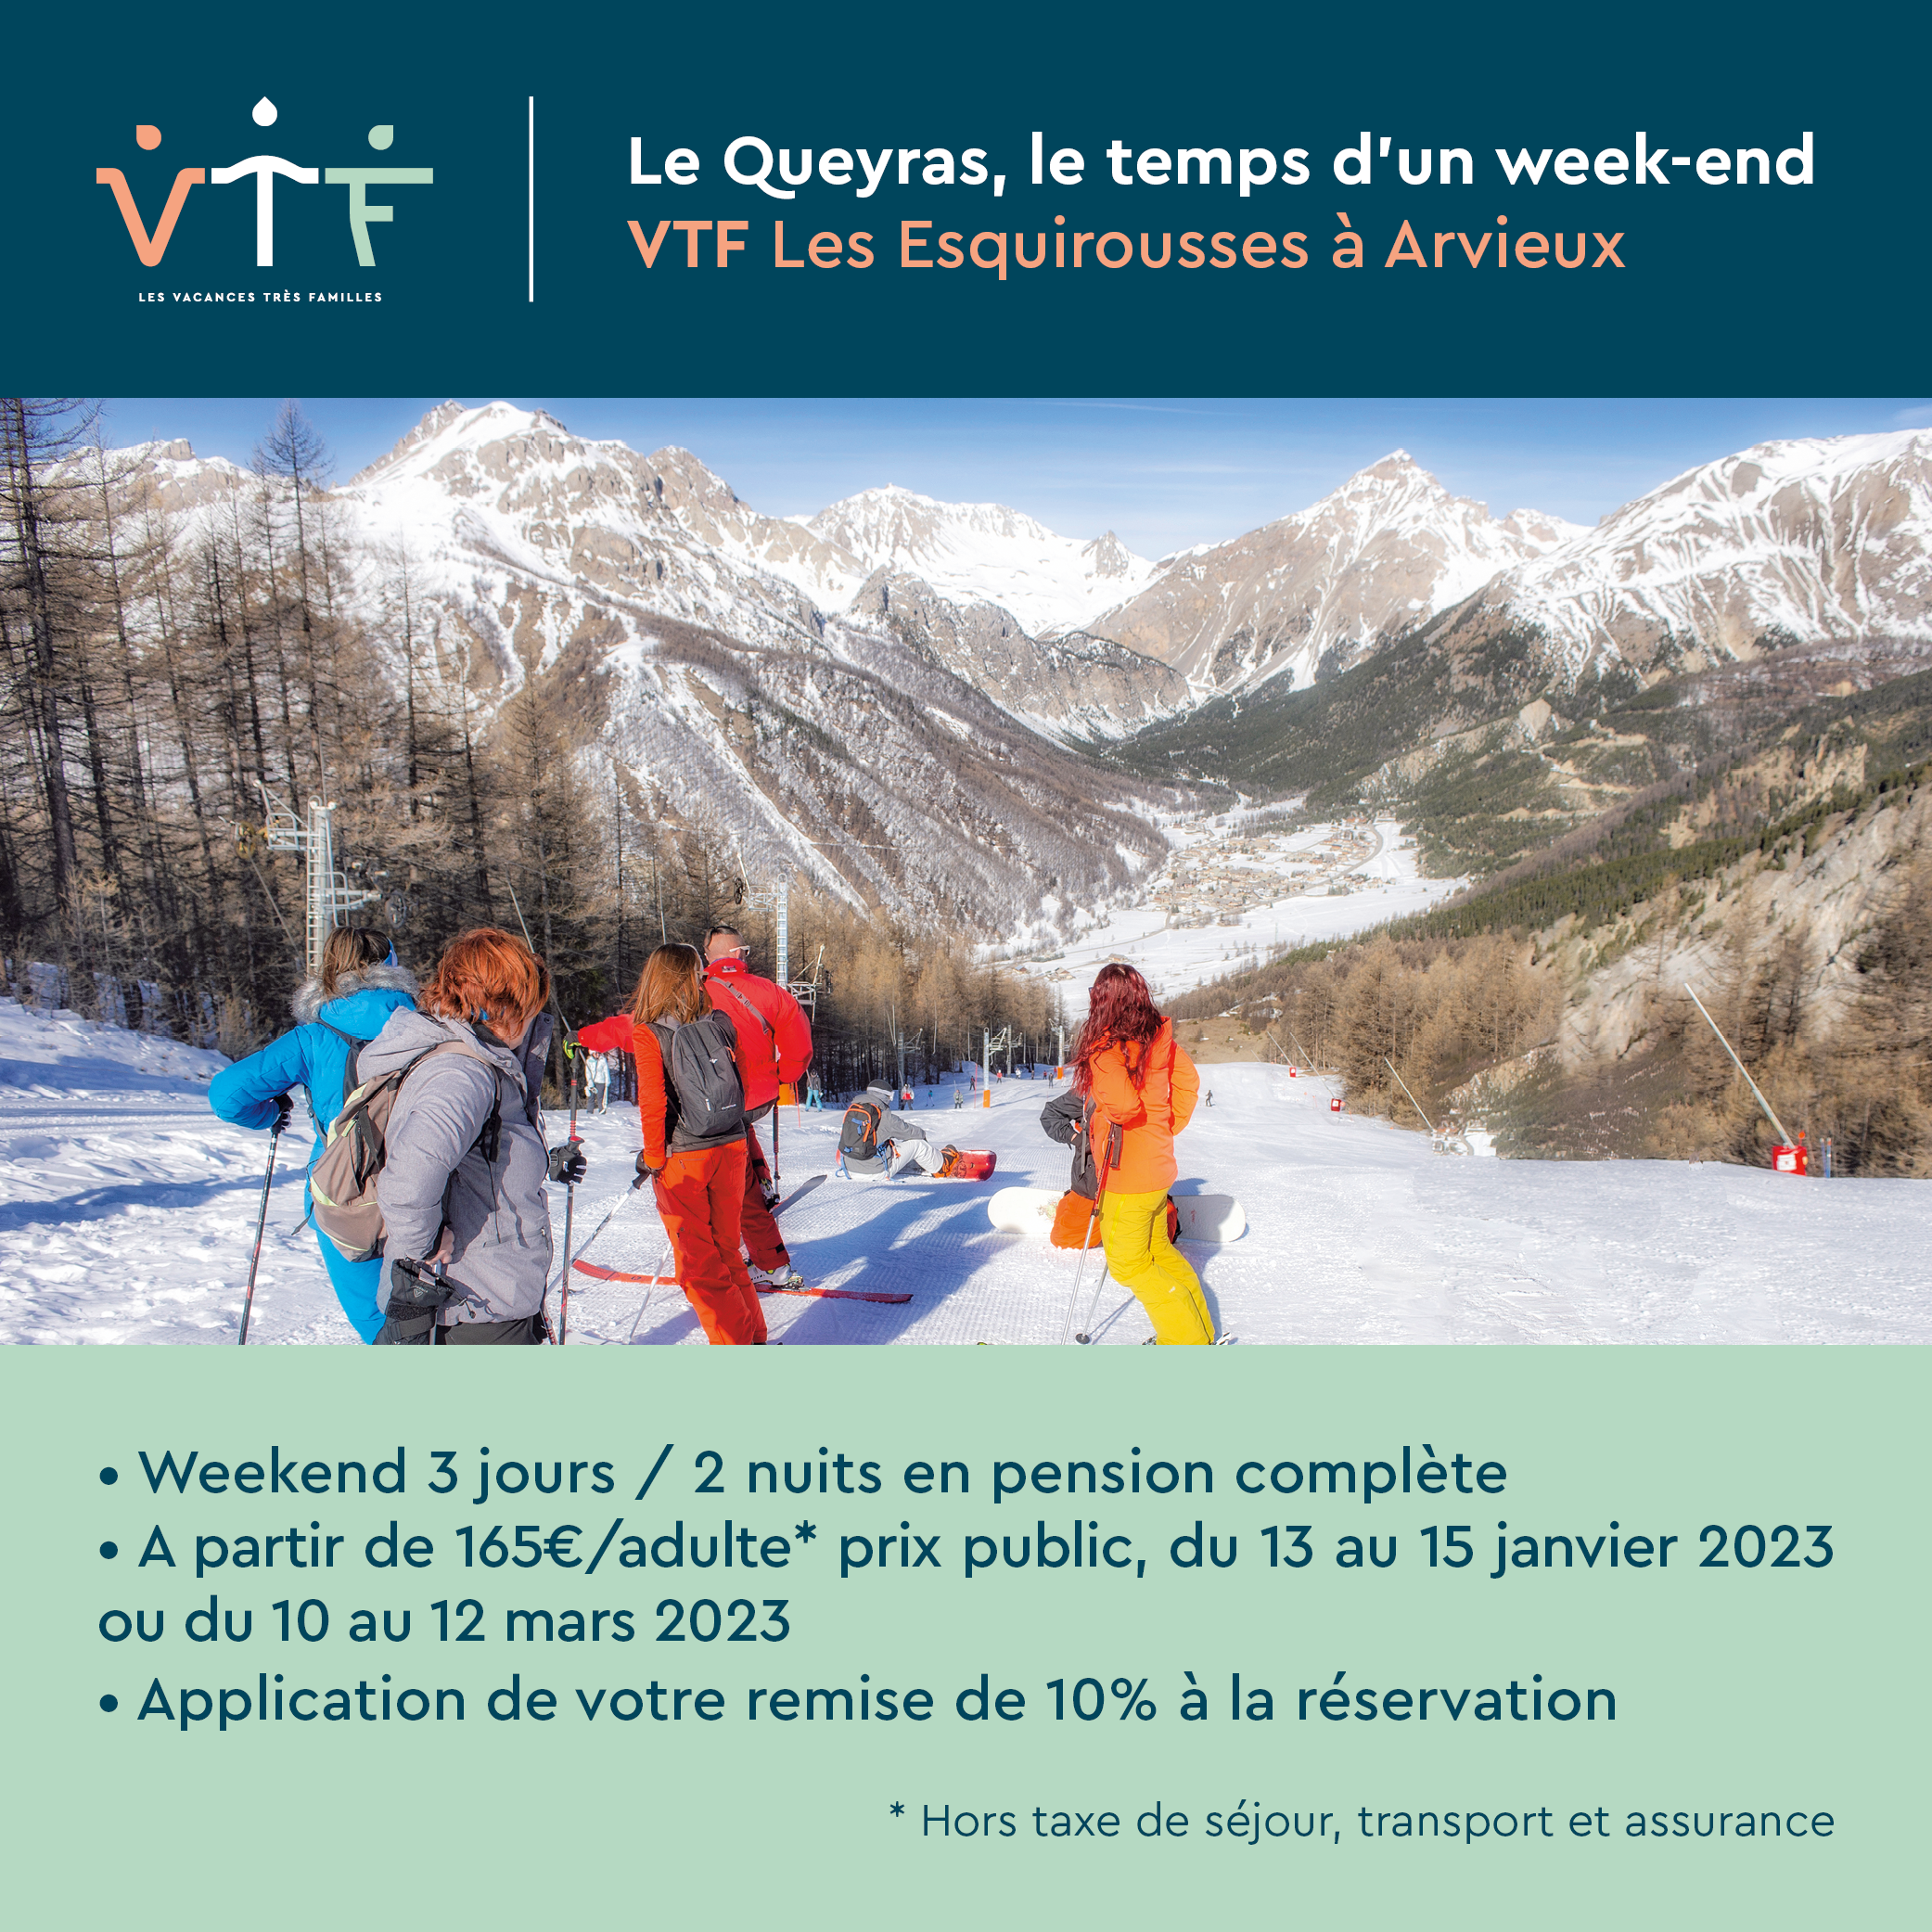 Ouverture exceptionnelle de Weekends ski à Arvieux au village de vacances VTF « Les Esquirousses*** » - VTF